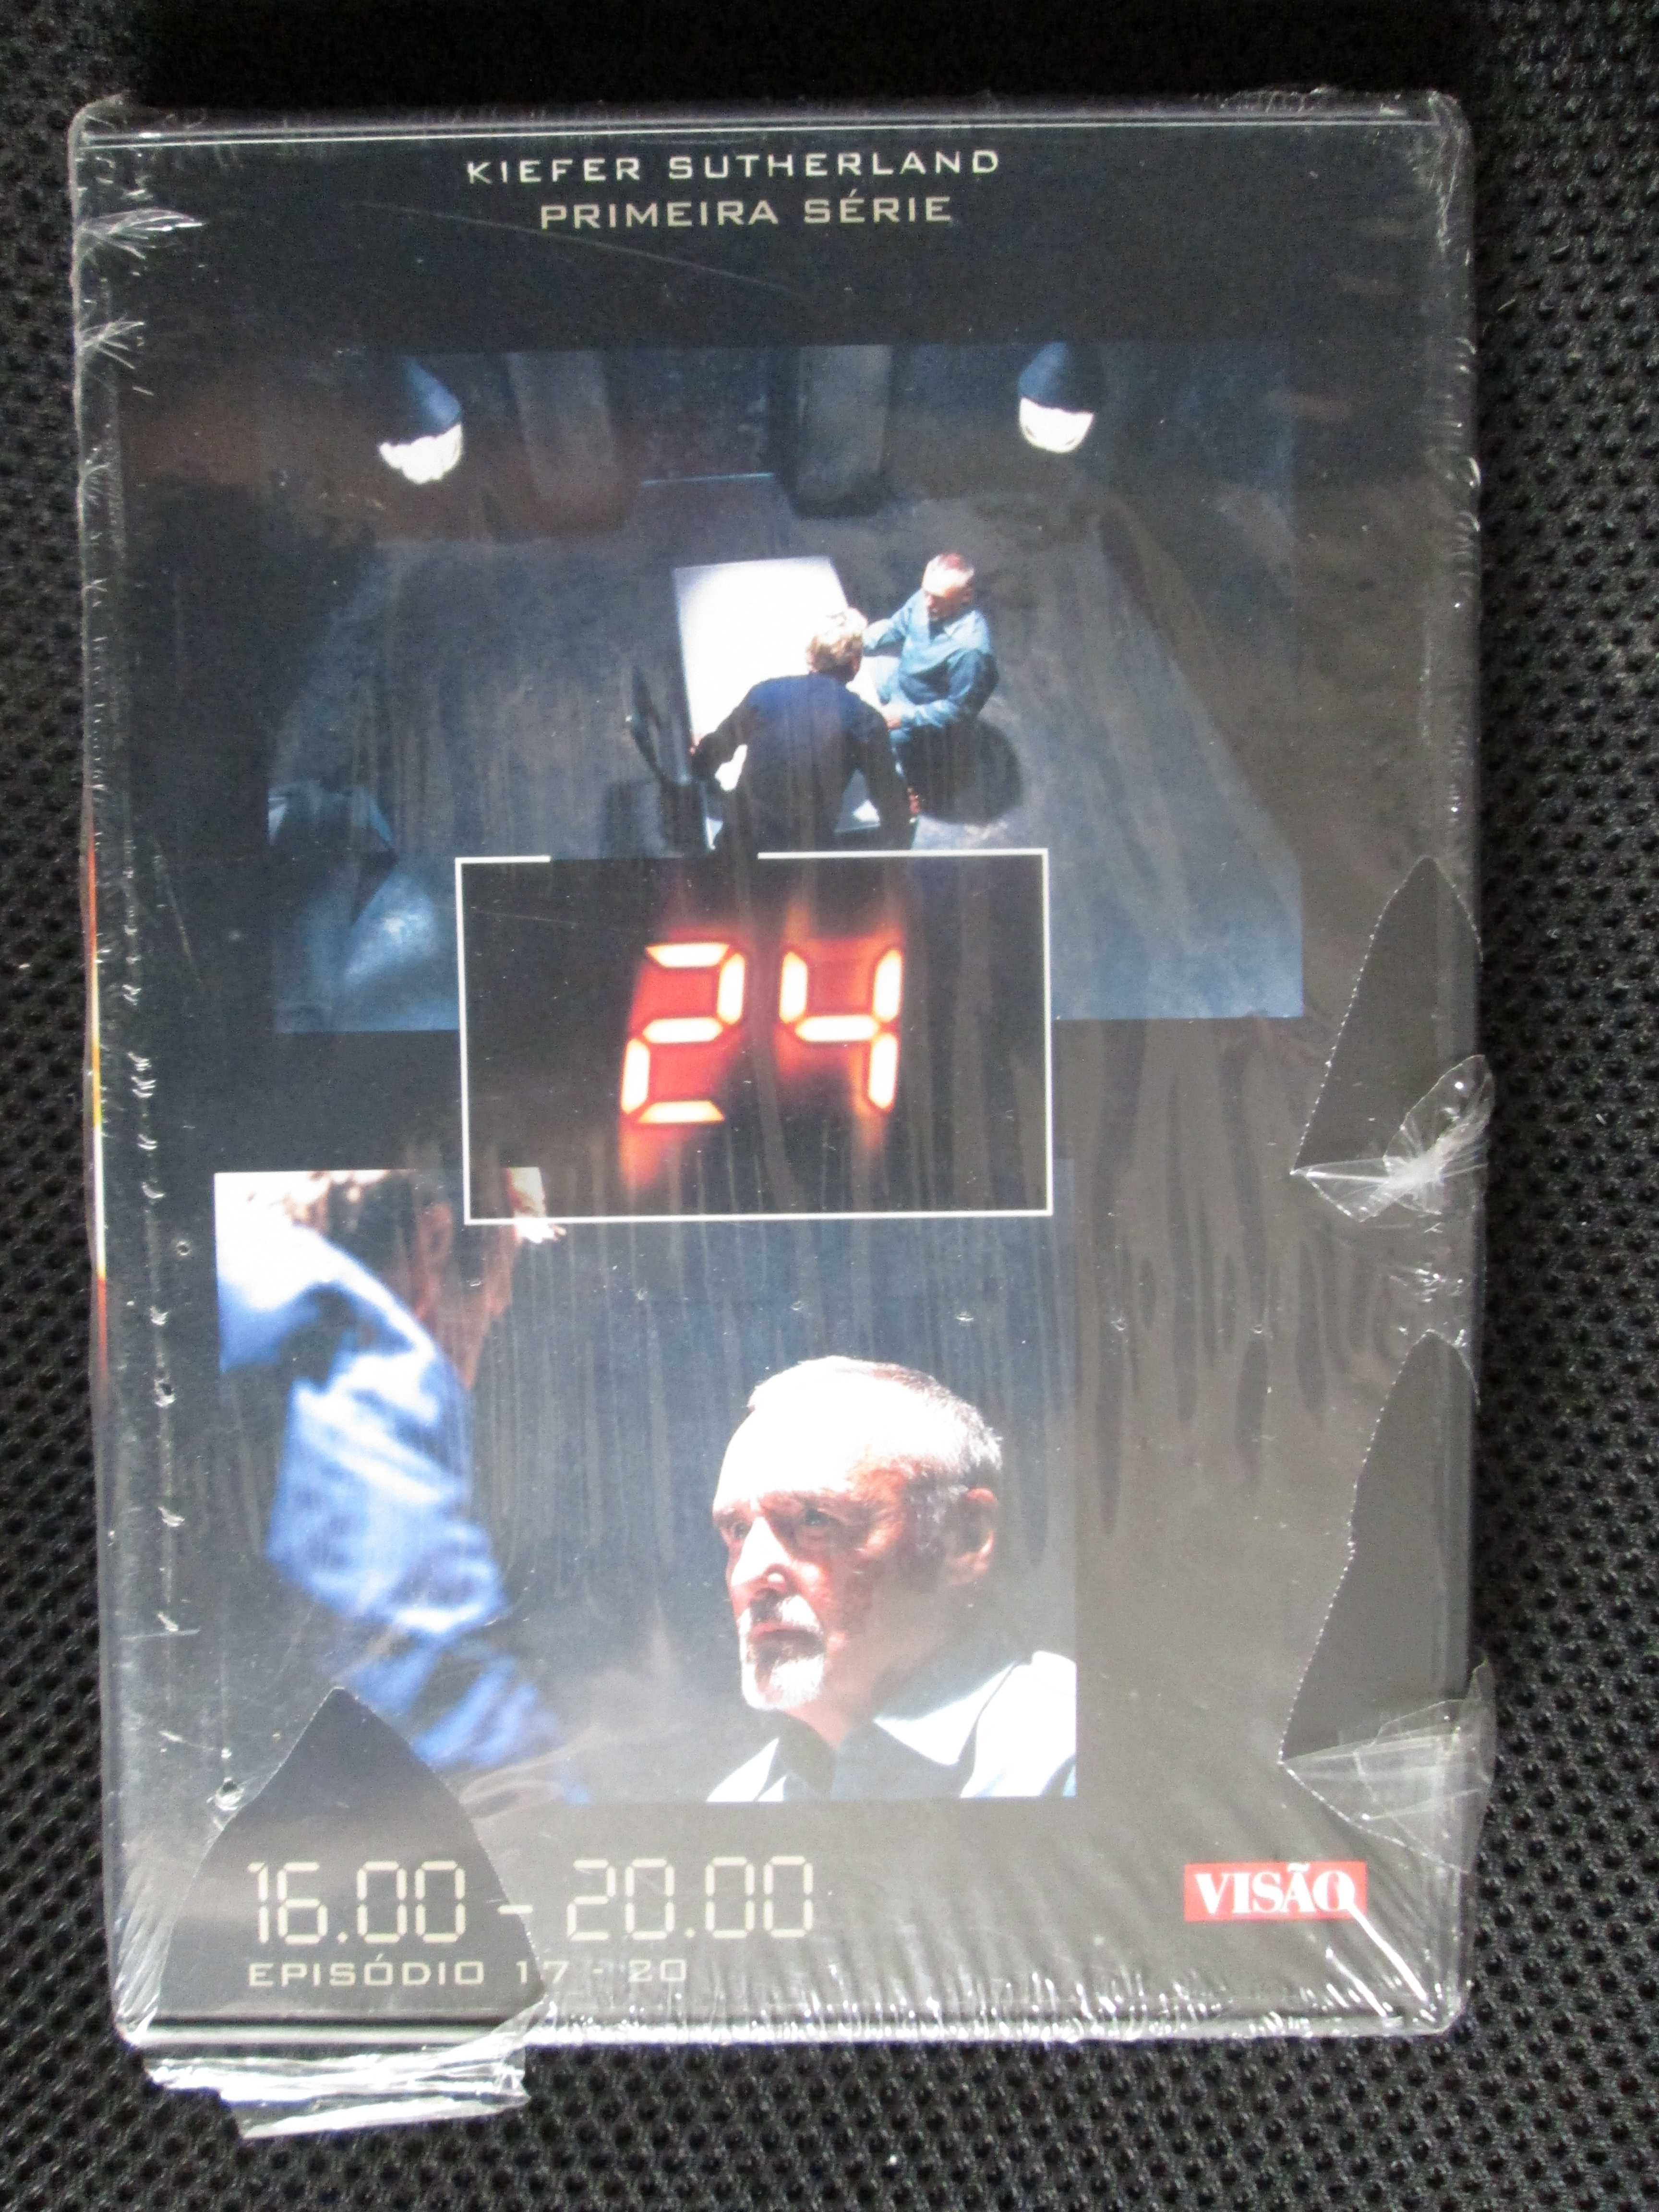 DVD - Série 24H, com Kiefer Sutherland